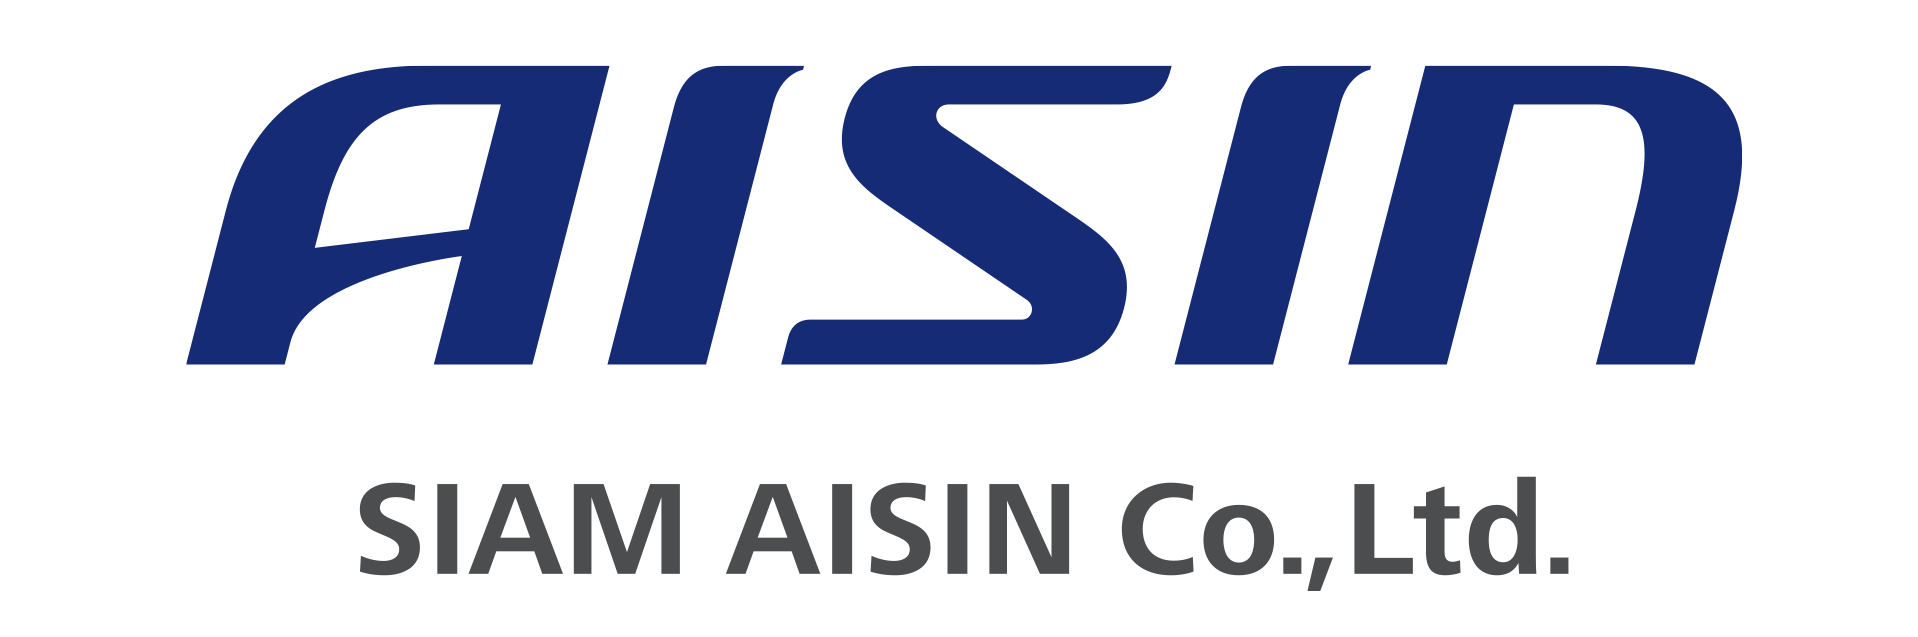 Siam Aisin Co., Ltd.